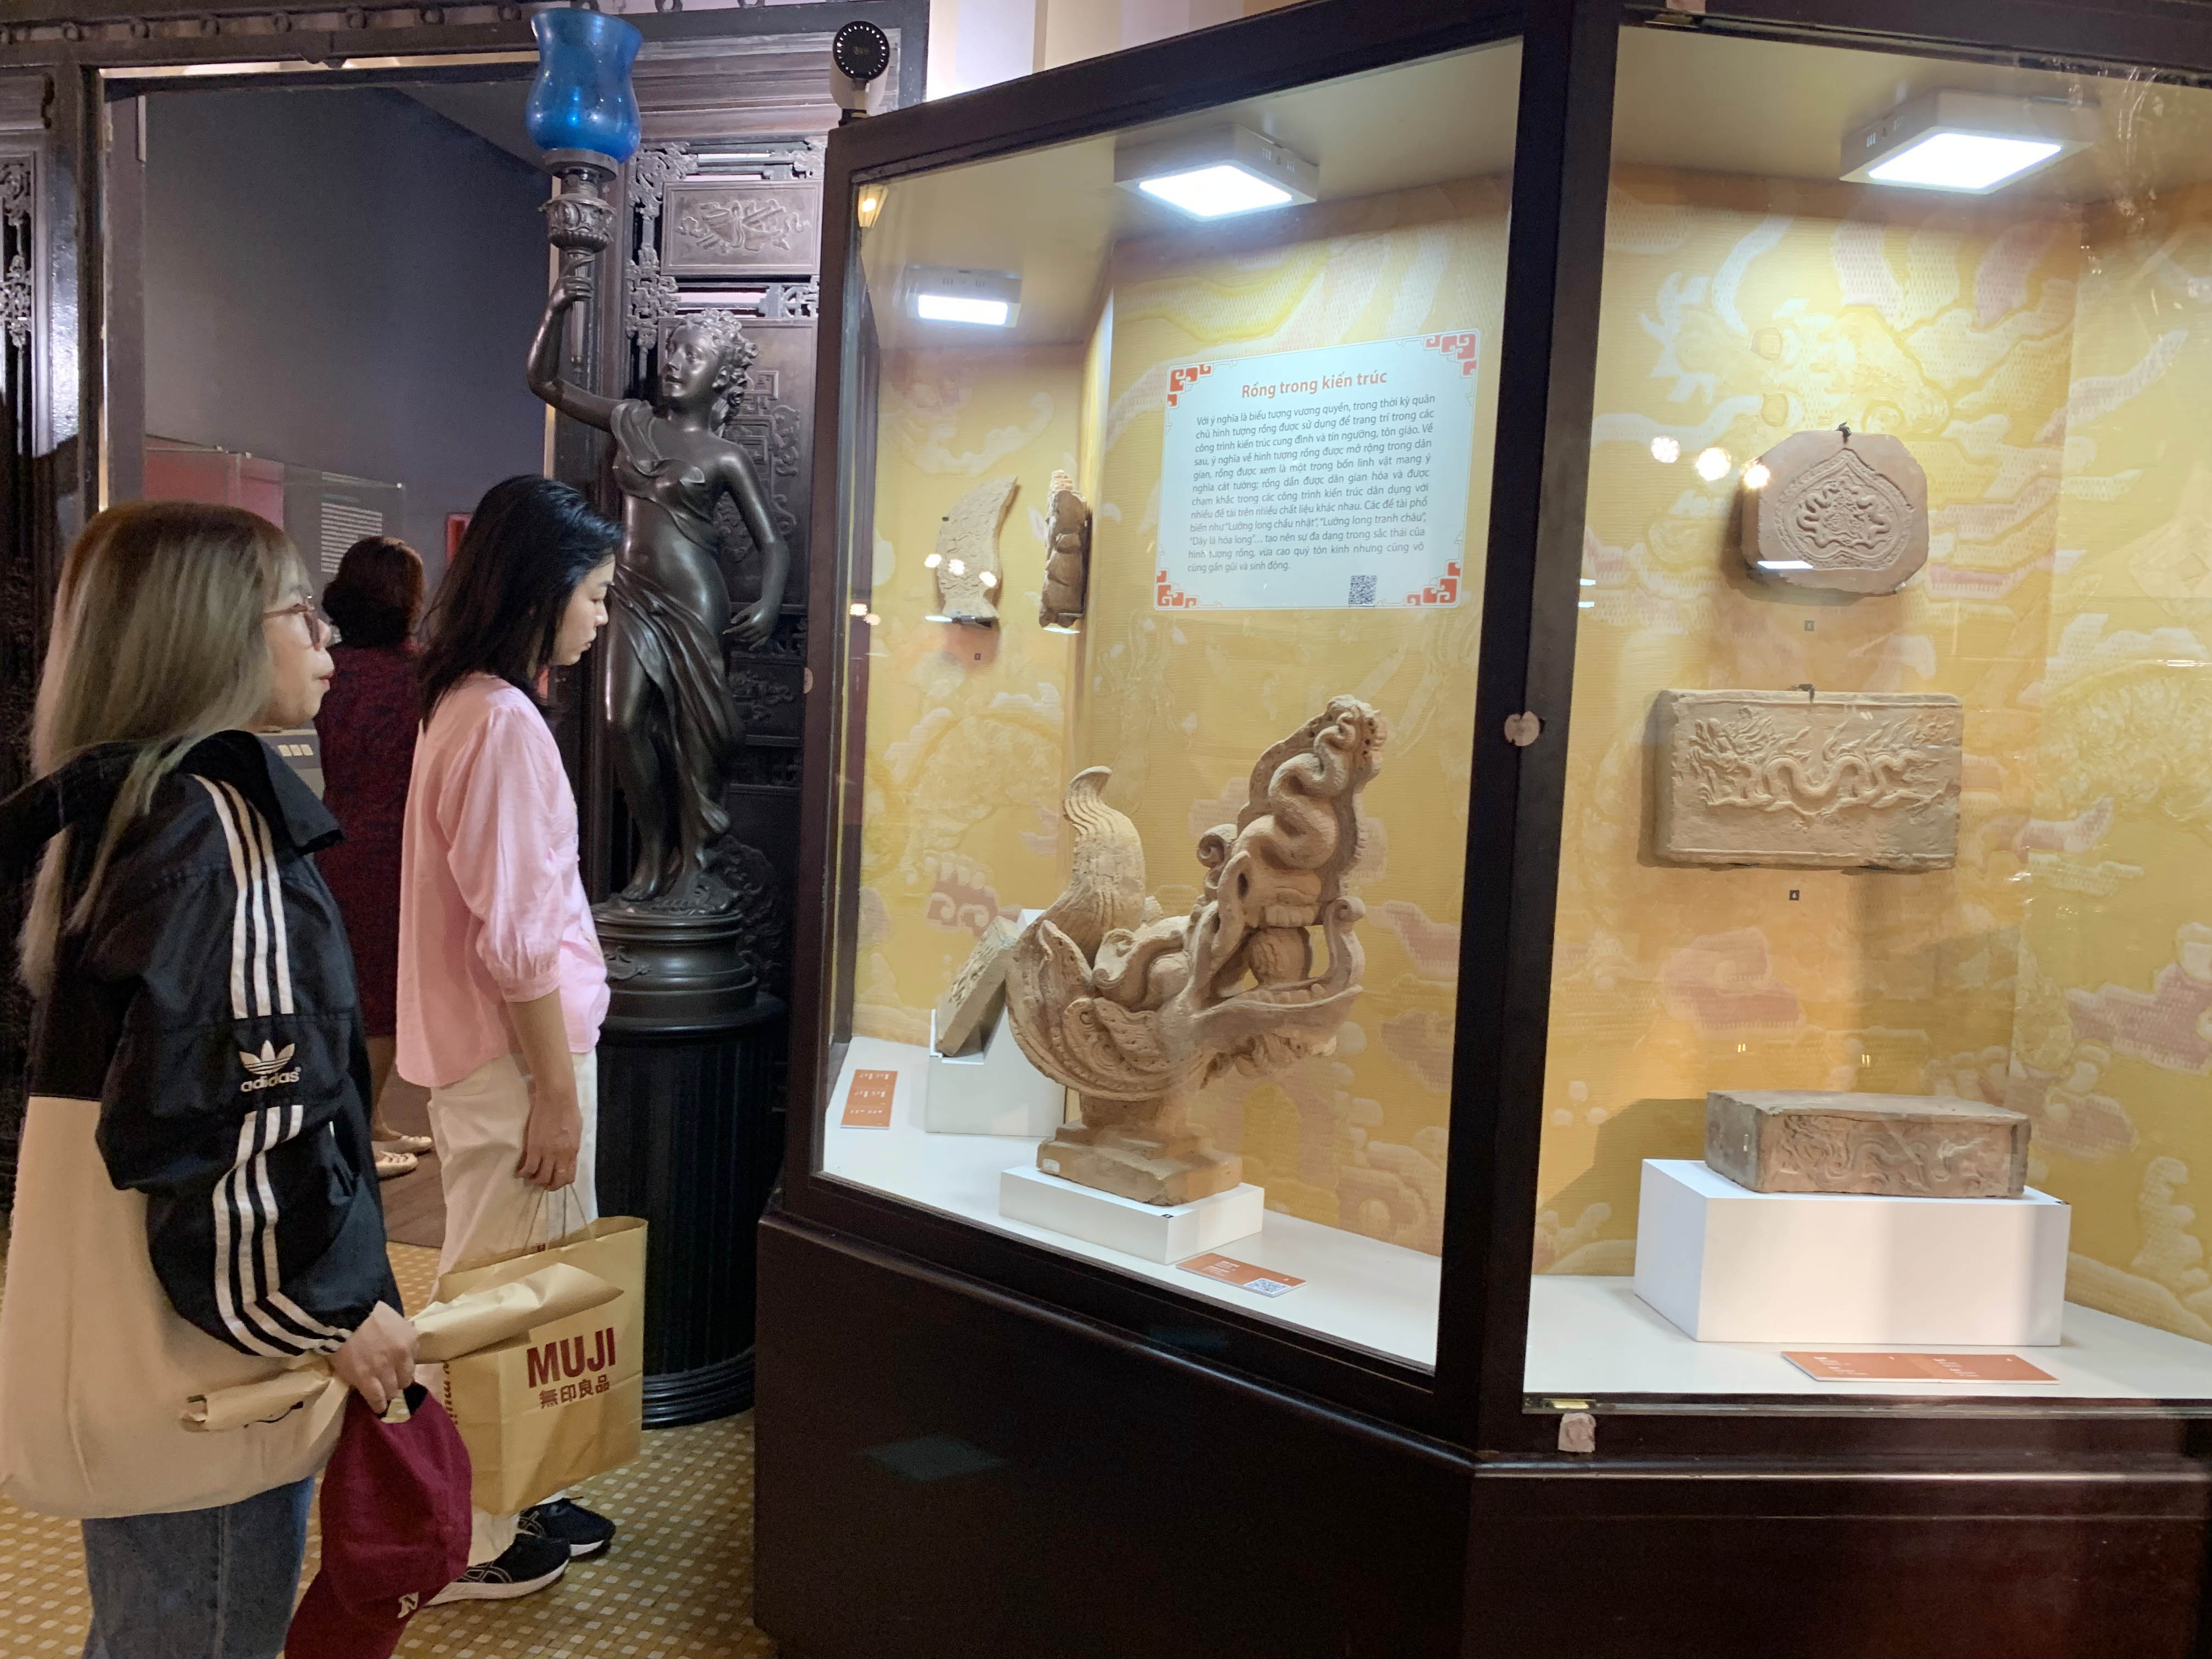 Triển lãm mang chủ đề “Long Vân khánh hội – Hình tượng rồng trong văn hóa Việt Nam” giới thiệu hơn 100 hiện vật quý của Bảo tàng Lịch sử TP.HCM và một số nhà sưu tập. 